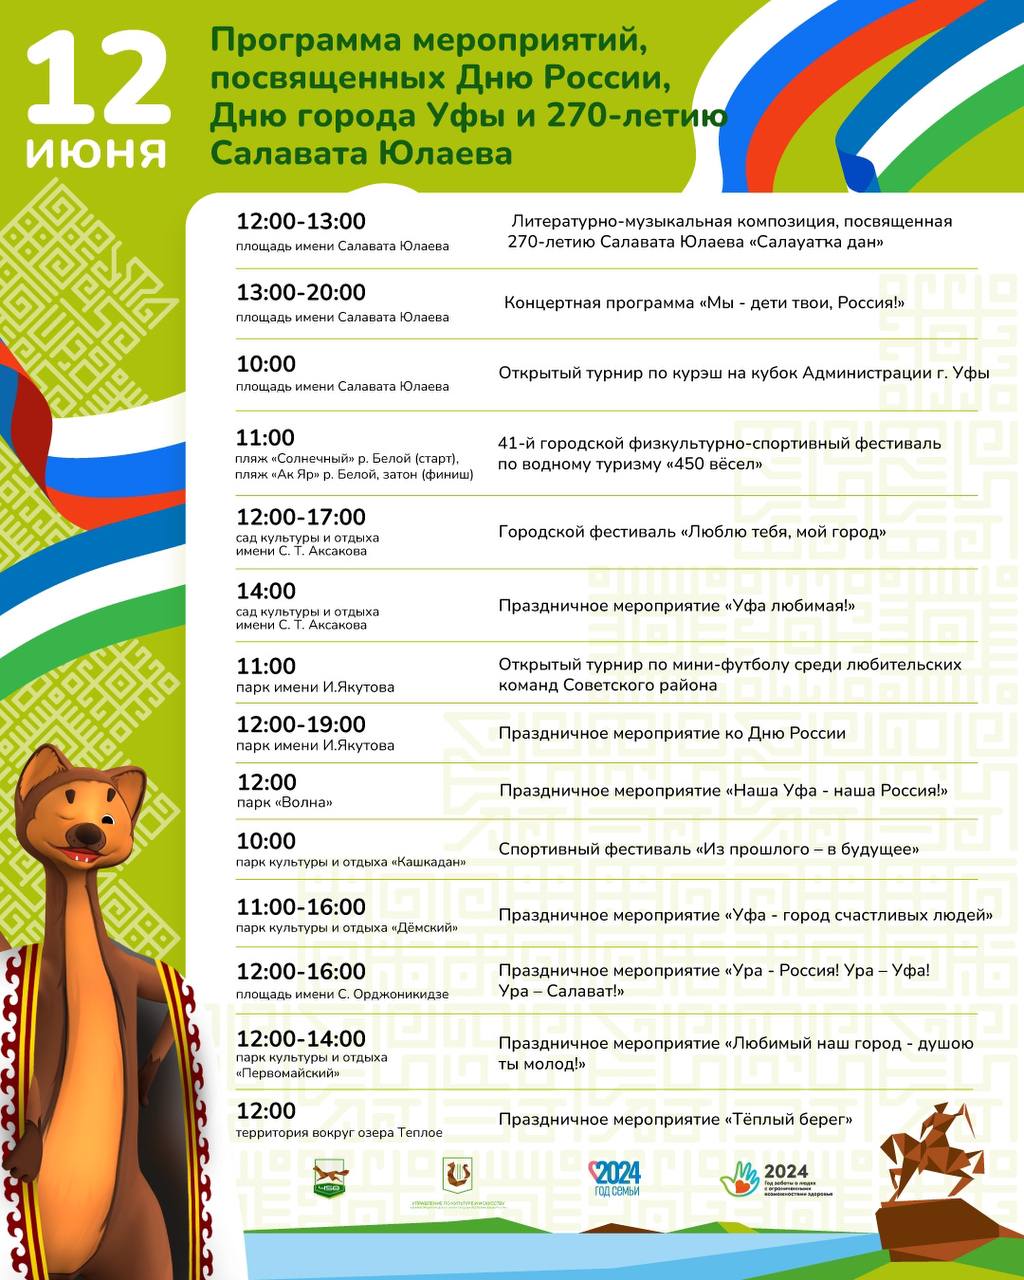 12 июня столица Республики Башкортостан отмечает сразу три праздника – День России, День города и 270-летие Салавата Юлаева